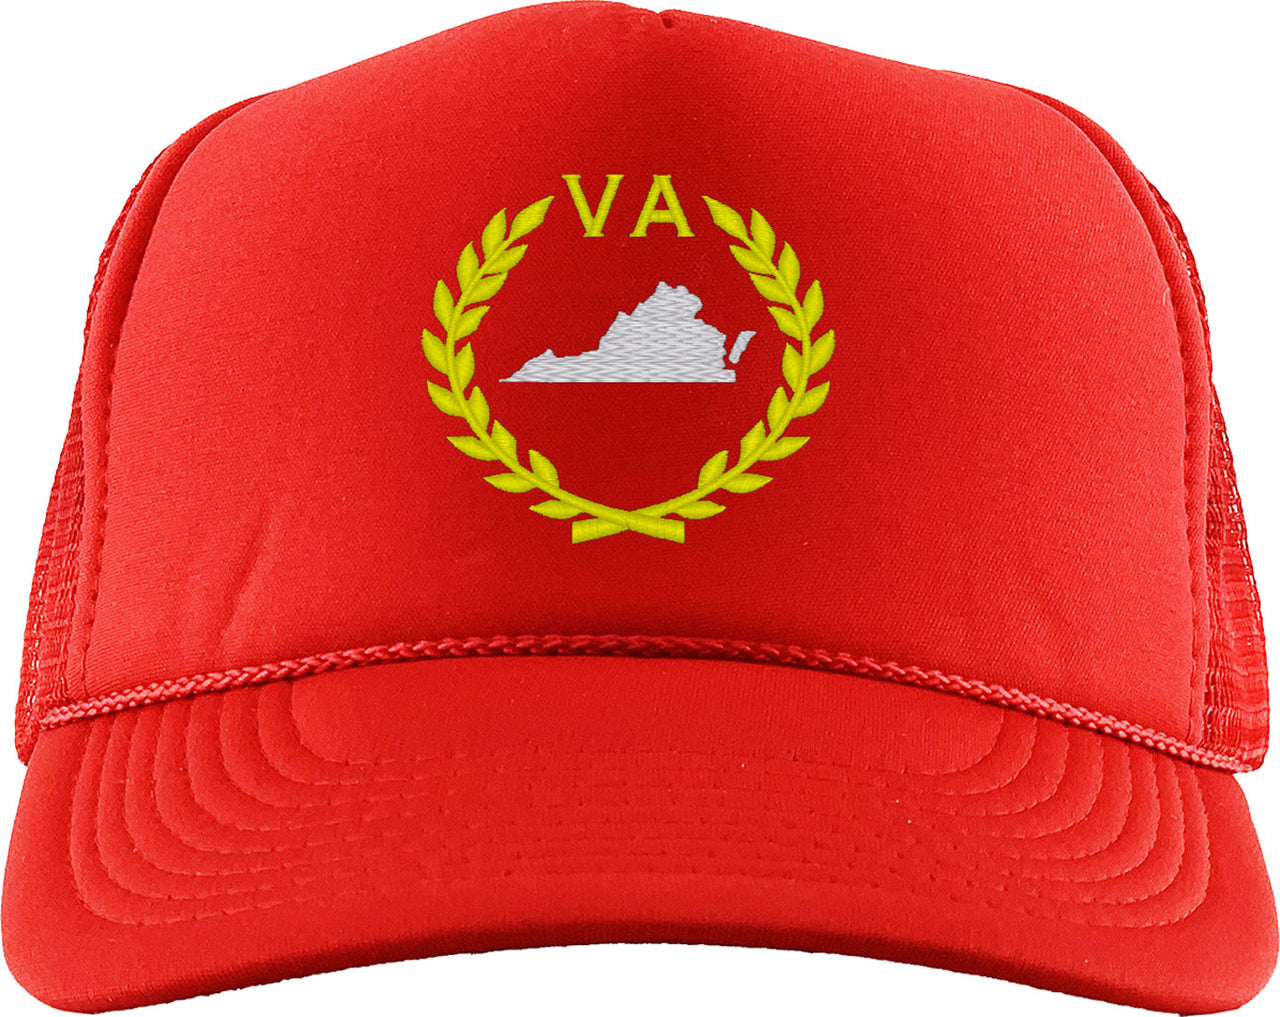 Virginia State Foam Trucker Hat